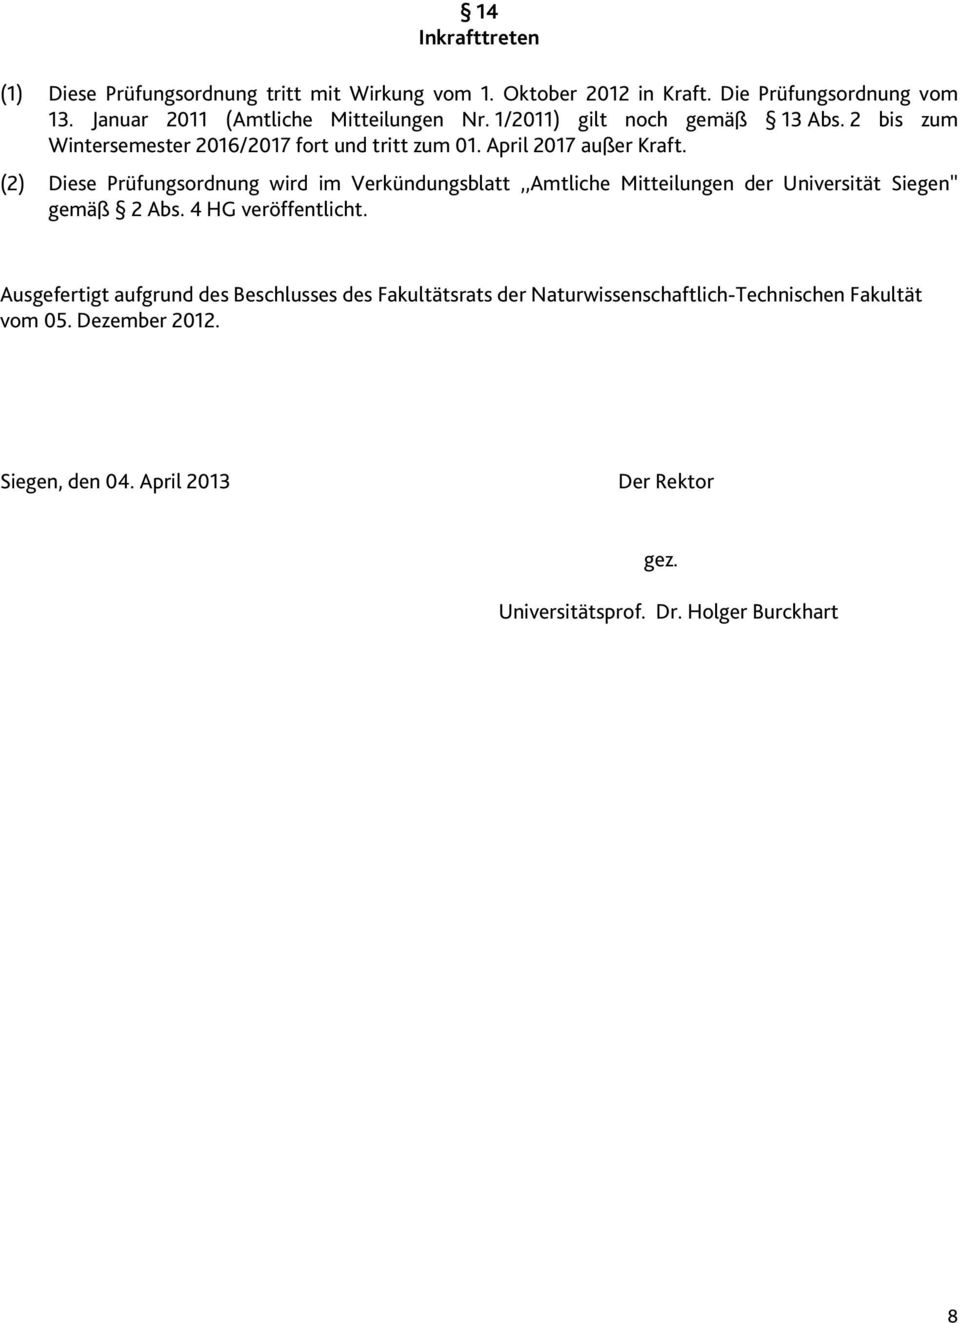 (2) Diese Prüfungsordnung wird im Verkündungsblatt,,Amtliche Mitteilungen der Universität Siegen'' gemäß 2 Abs. 4 HG veröffentlicht.